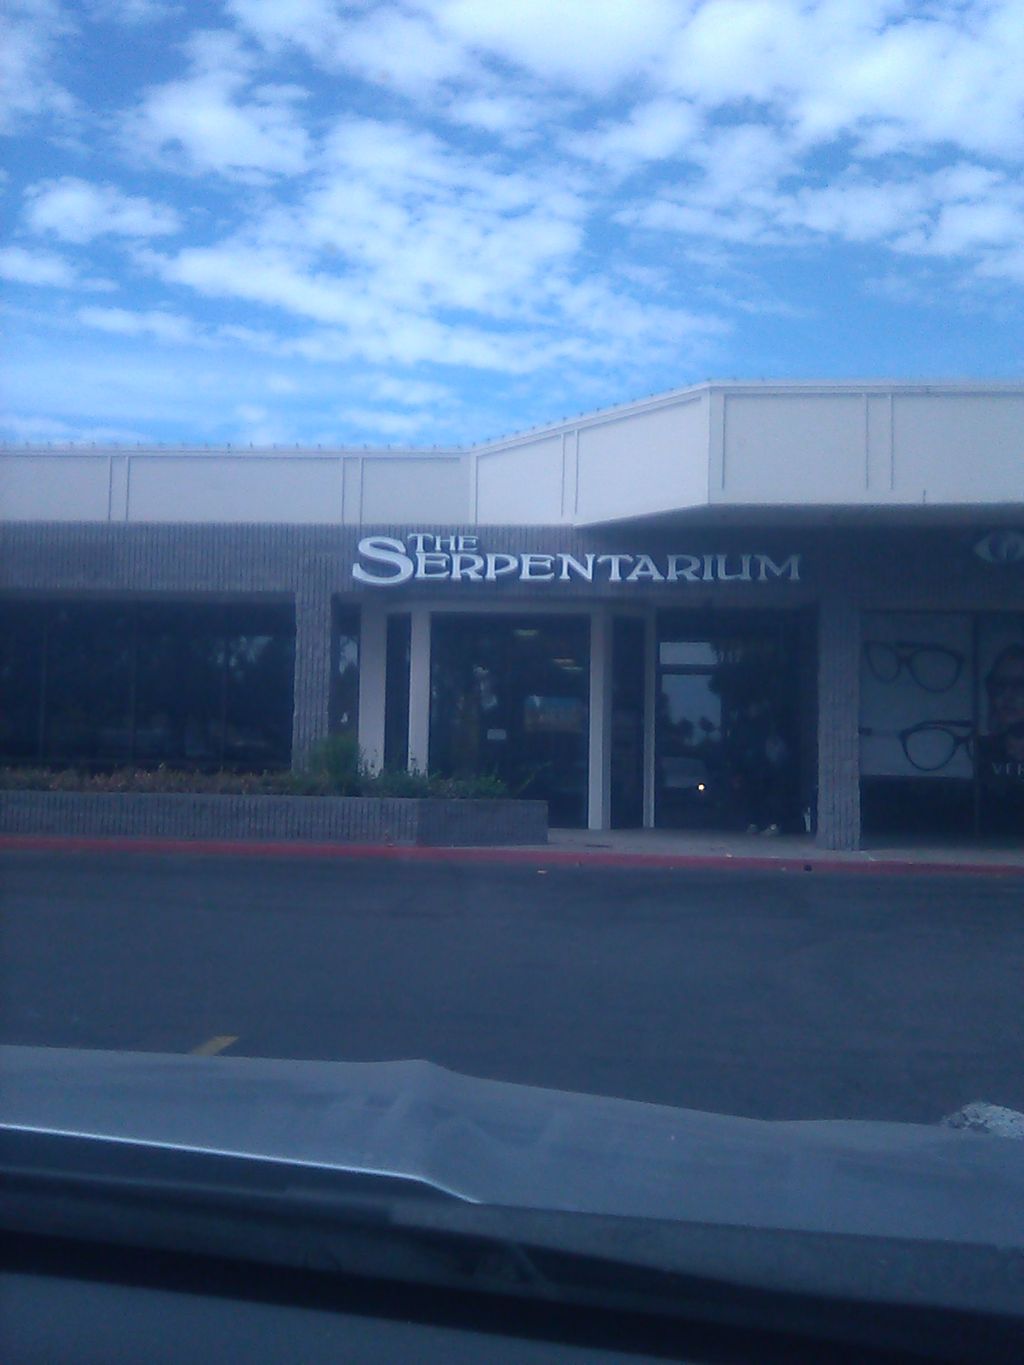 The Serpentarium